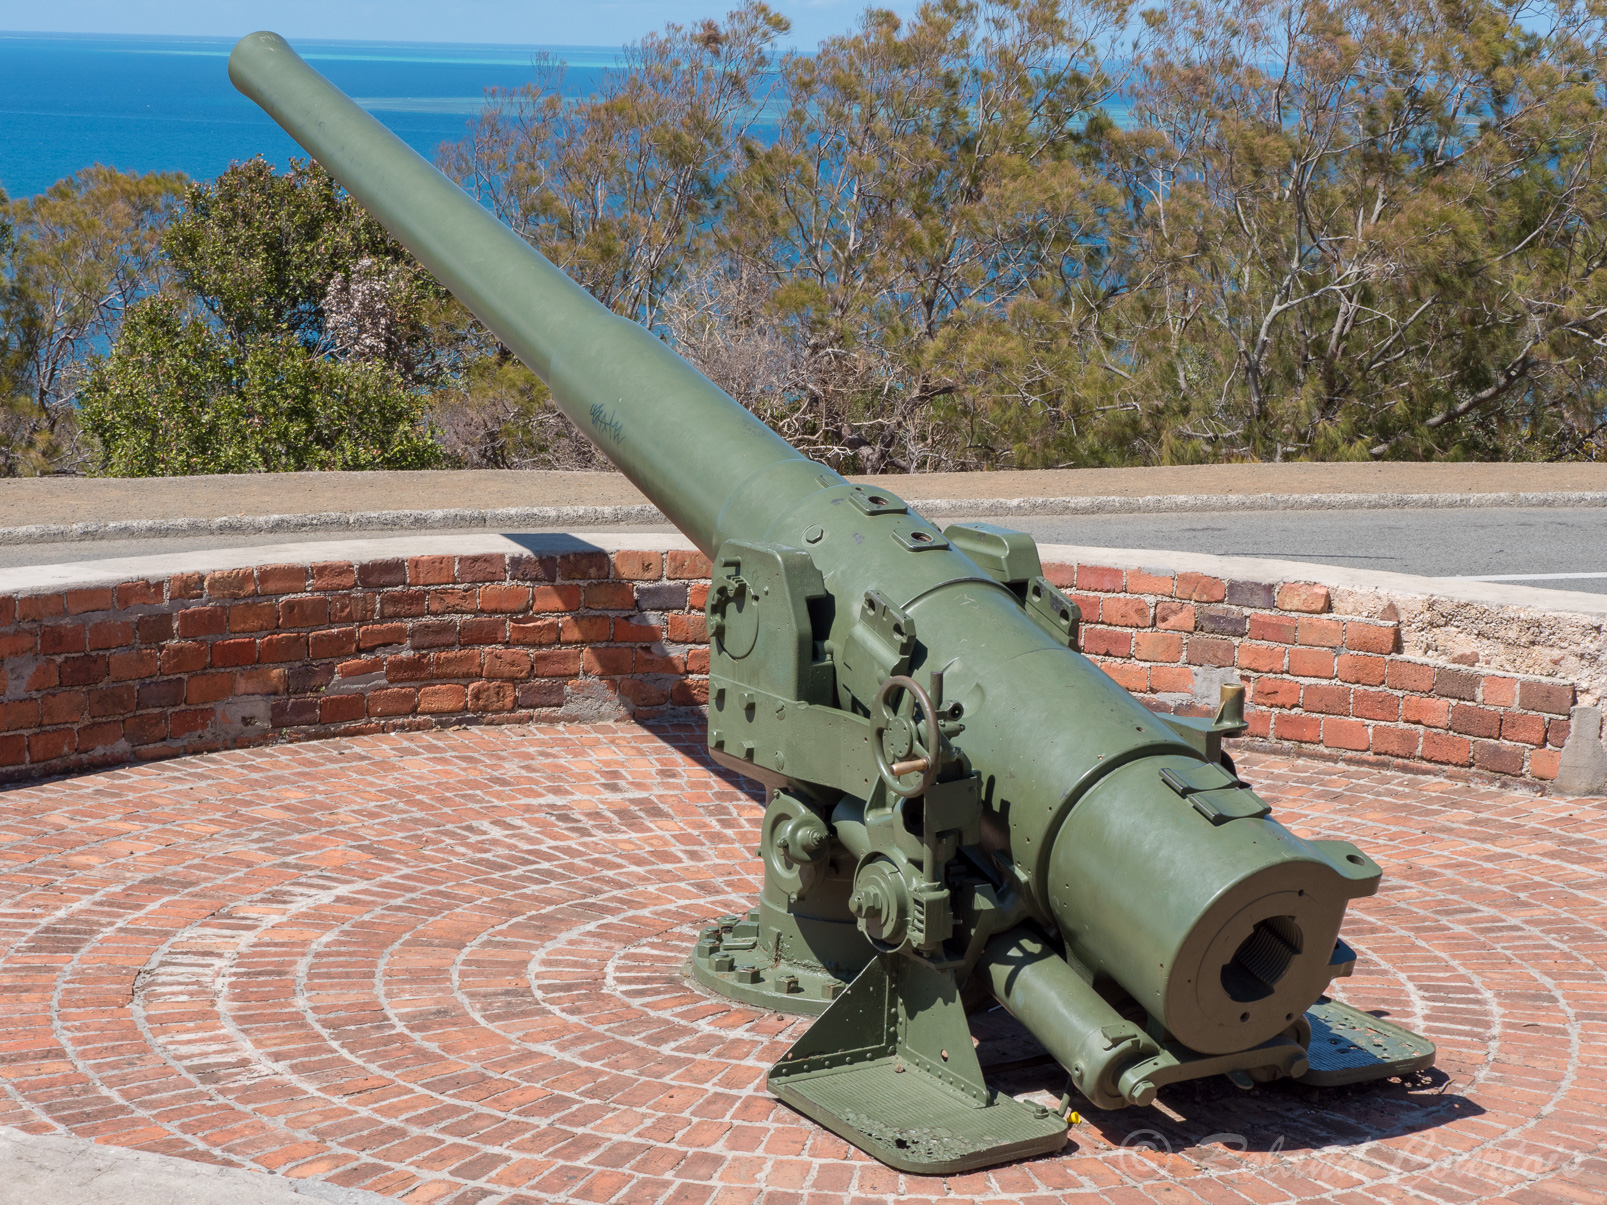 La colline fut l'un des postes avancés des américains durant la Seconde Guerre Mondiale. Une batterie de canons visaient à repousser une éventuelle attaque des Japonais